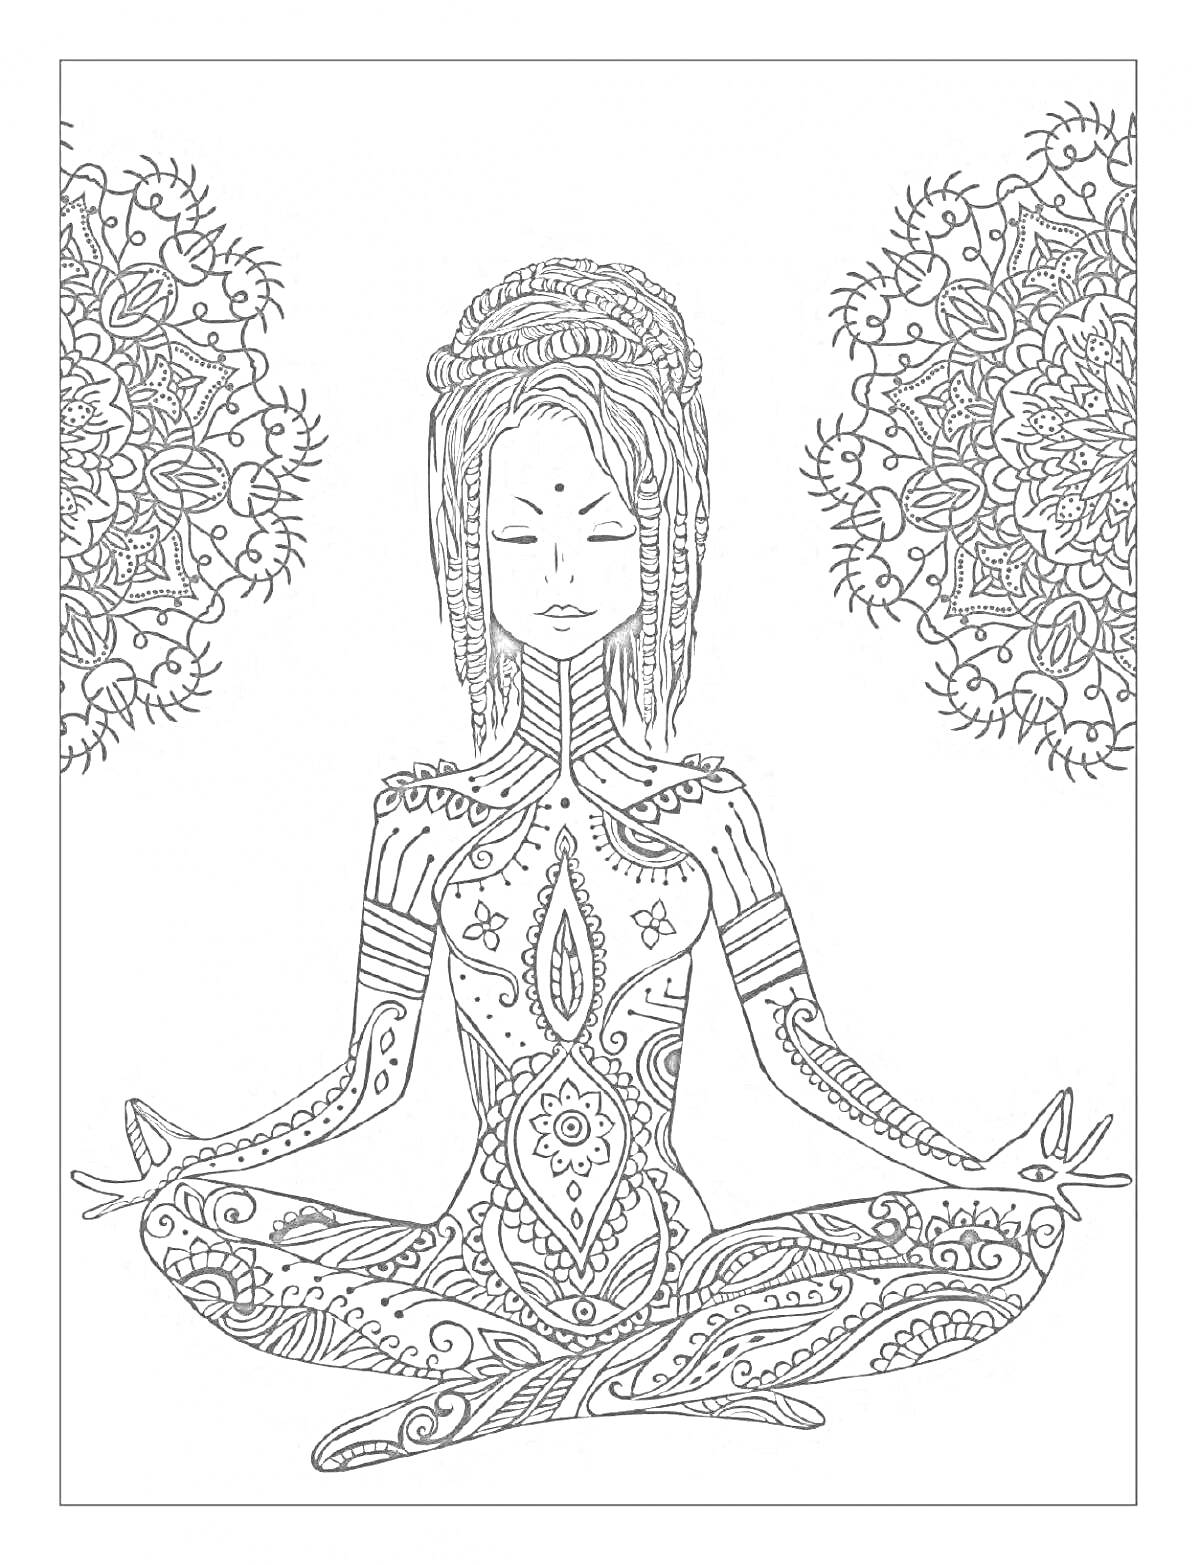 Медитирующая женщина с мандалами и орнаментами